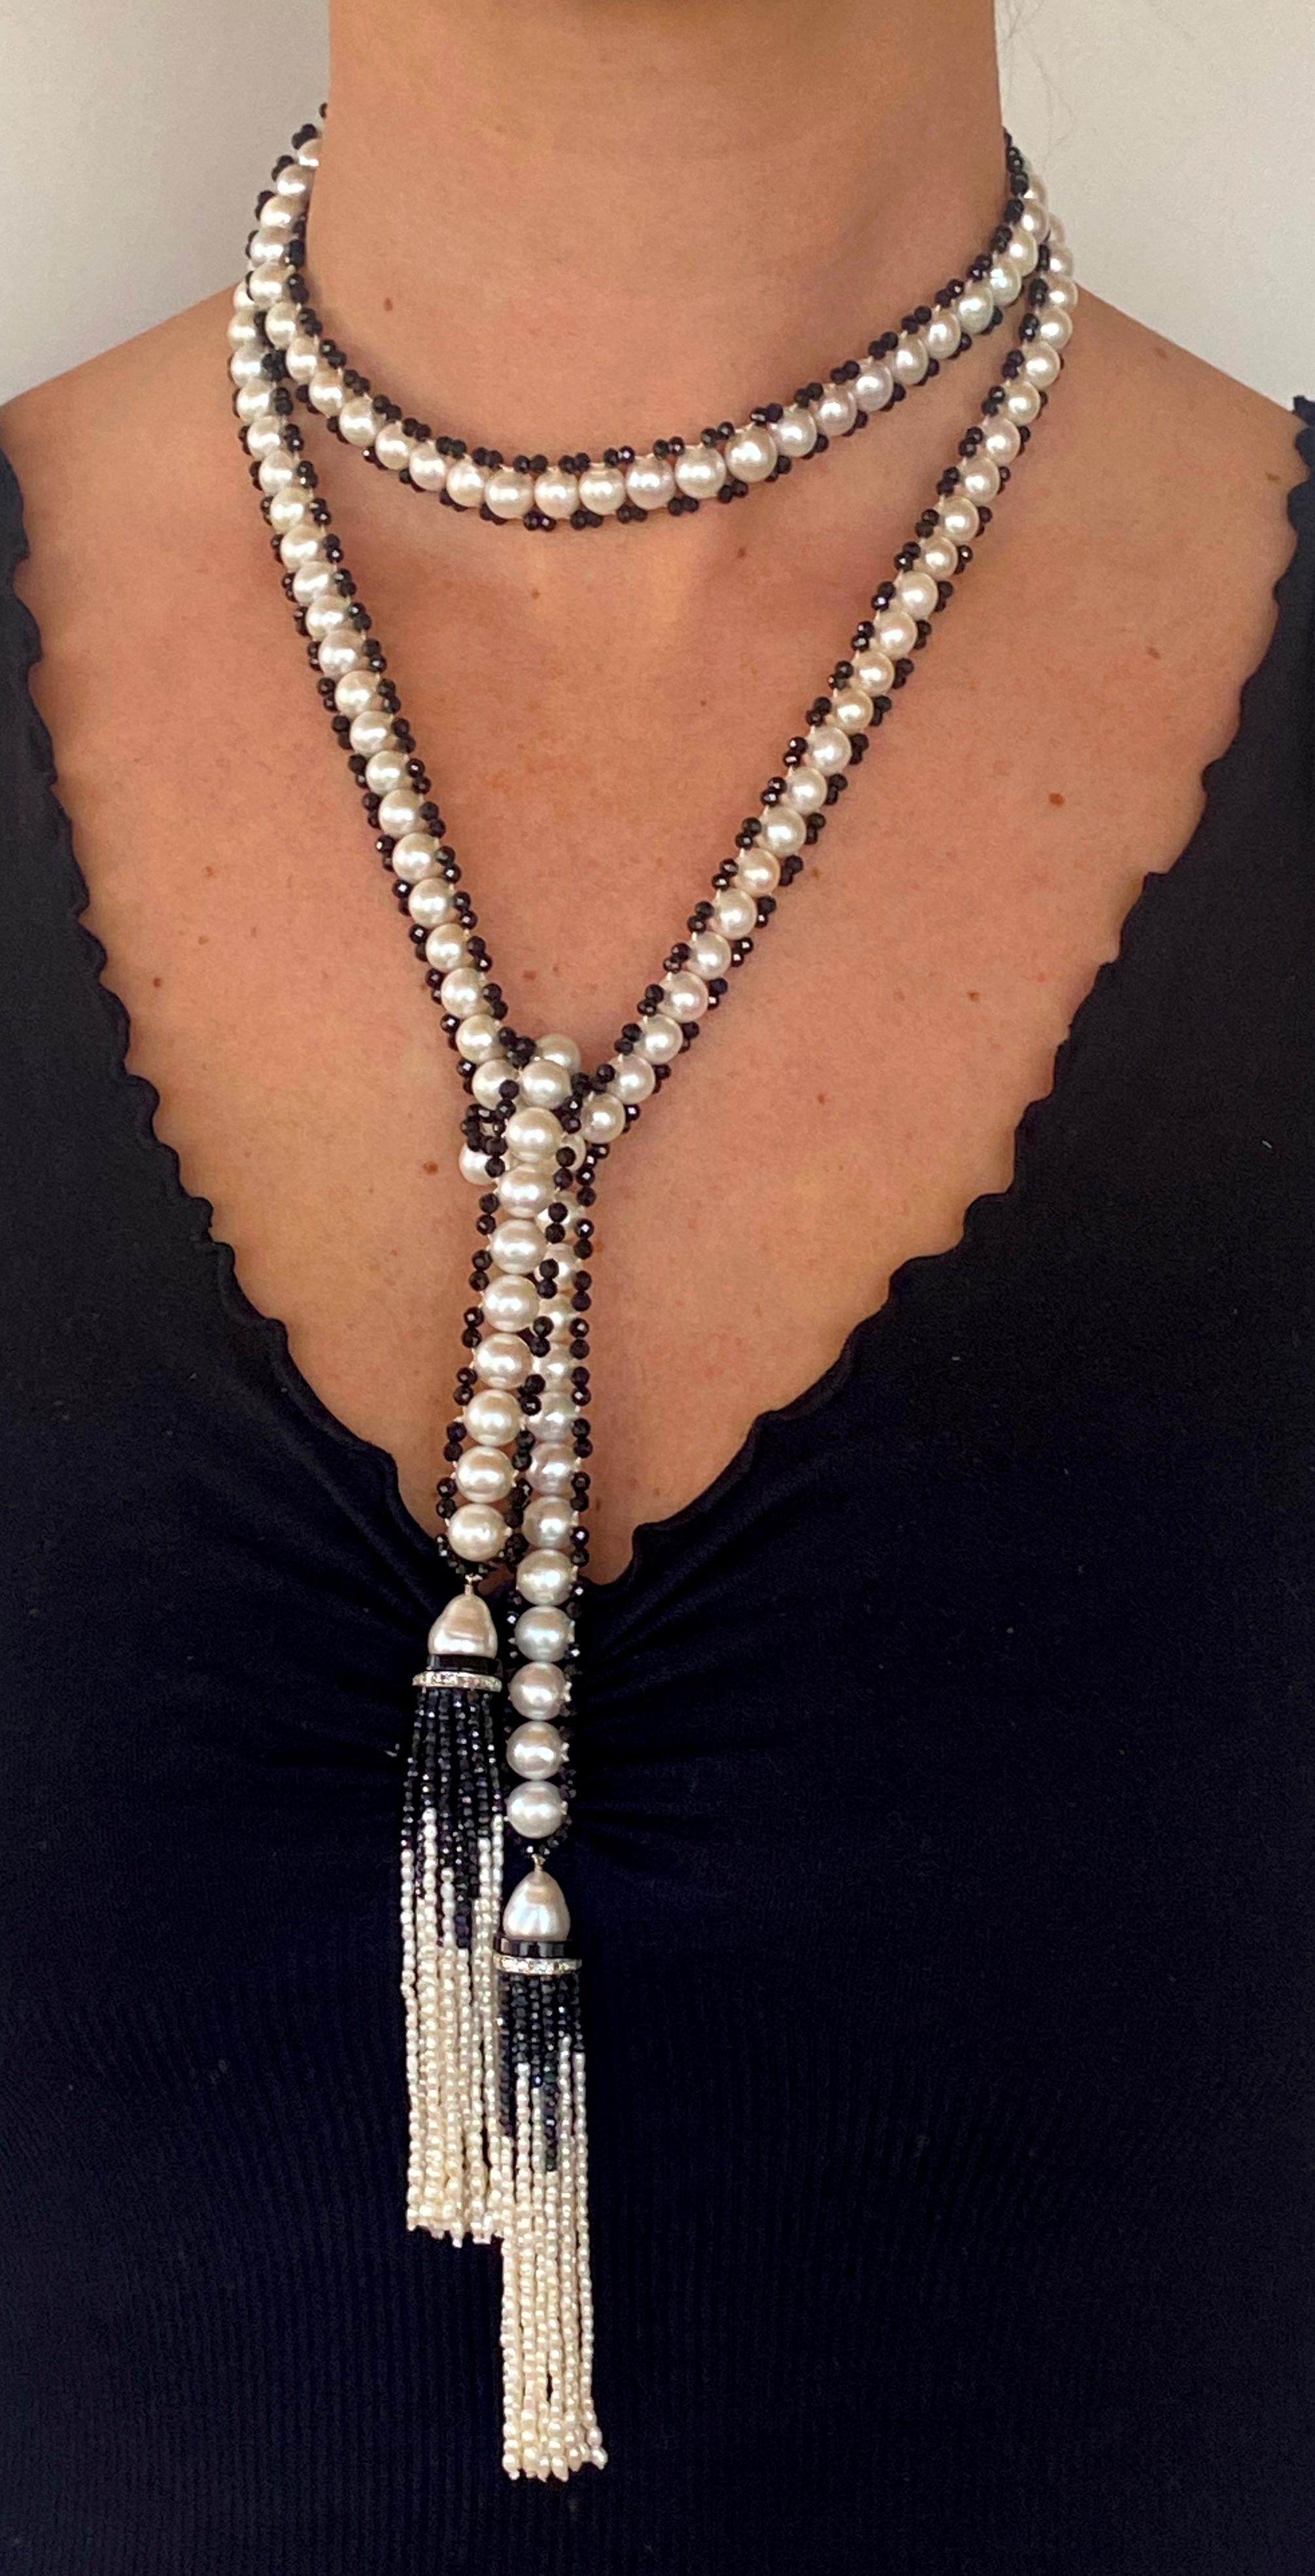 Wunderschönes Marina J. handgewebtes Sautoir. Dieses Stück besteht aus perfekt runden Perlen, die einen wilden Glanz aufweisen und von glatten Perlen aus schwarzem Onyx eingefasst werden. Jede Perle wurde einzeln ausgewählt und verleiht dem Sautoir